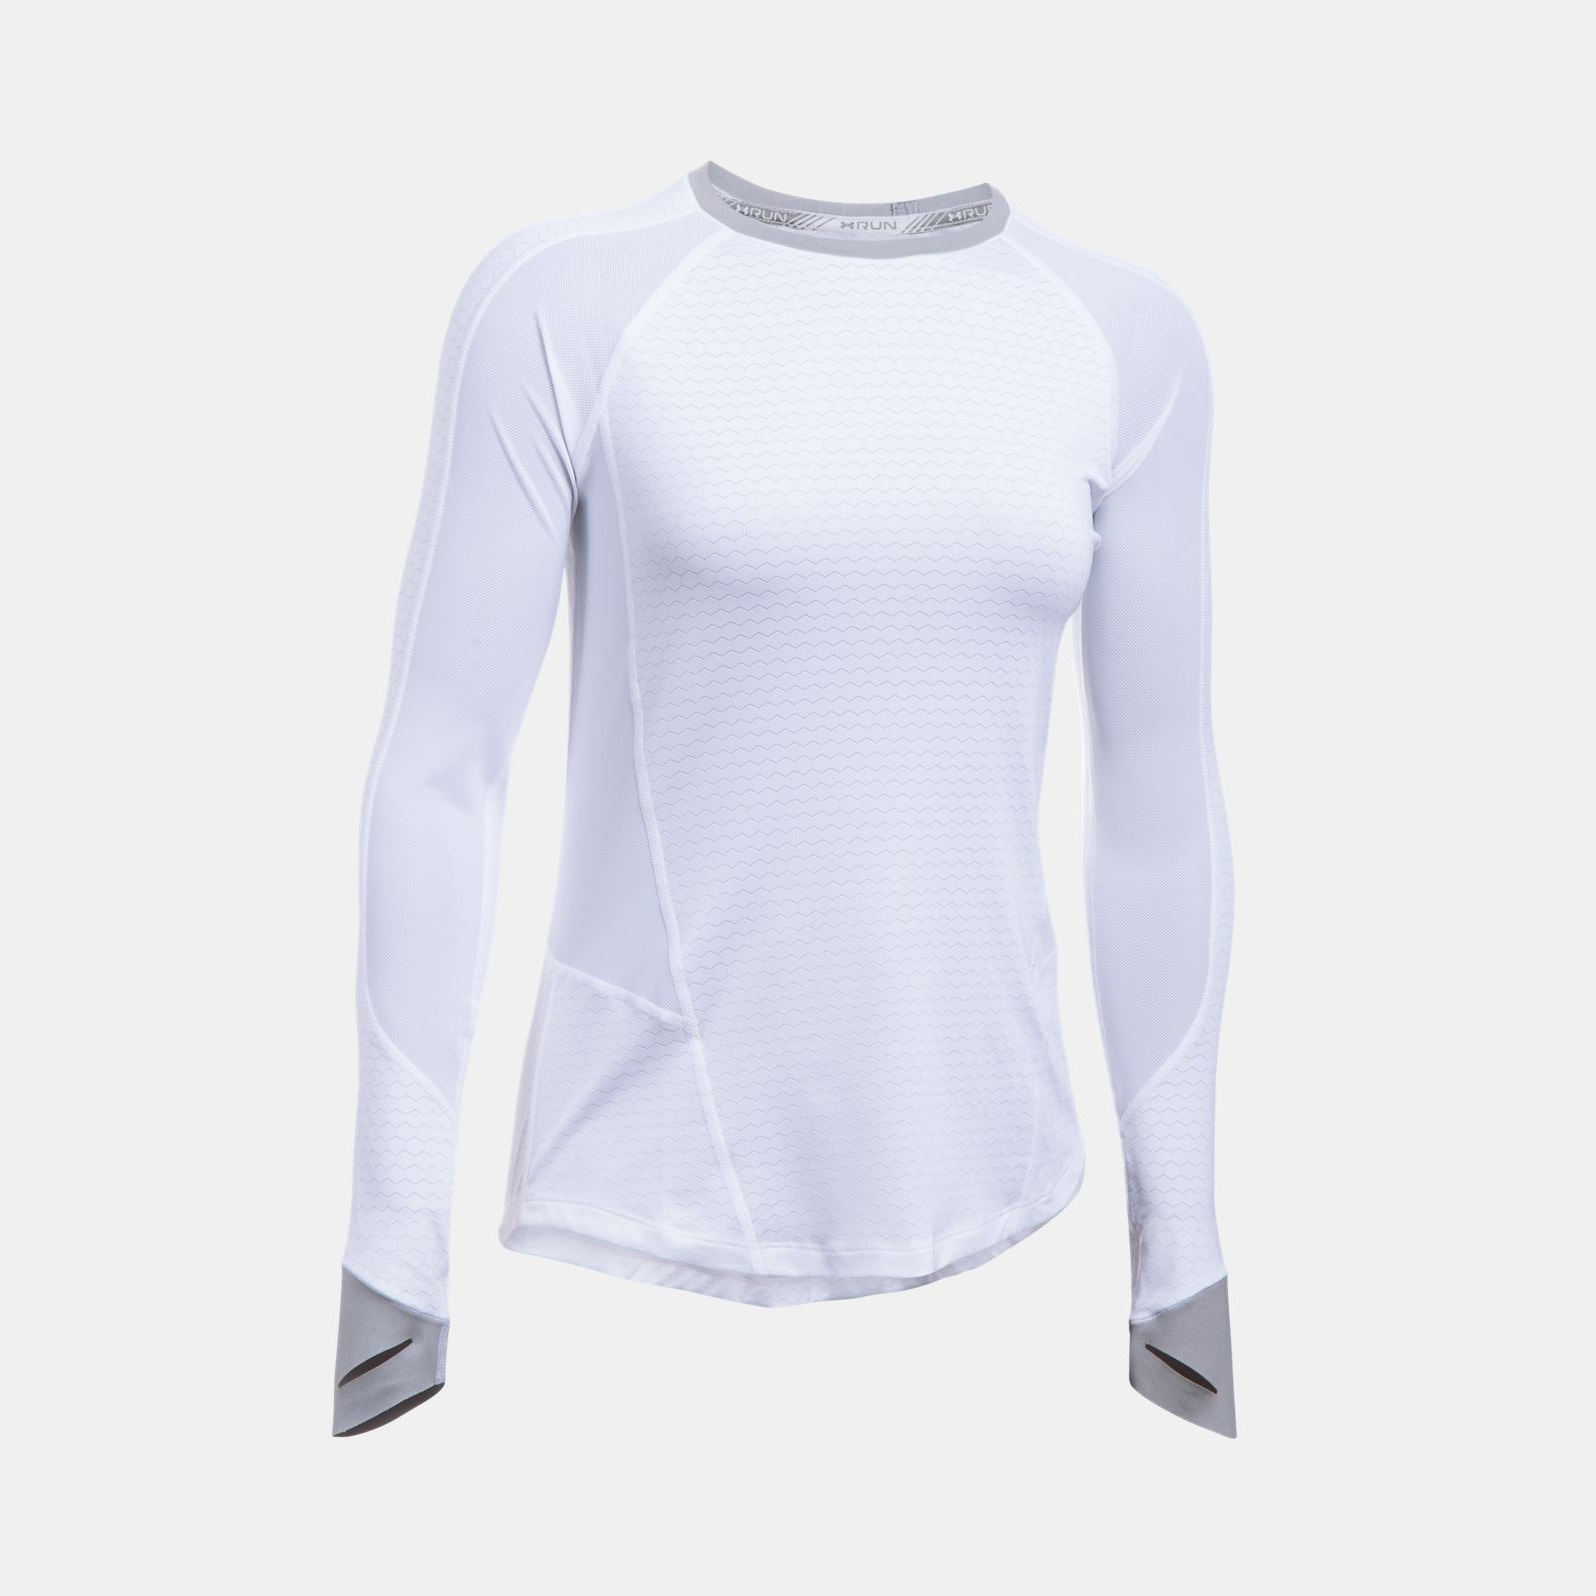 Bluze -  under armour HexDelta Long Sleeve Shirt 8143